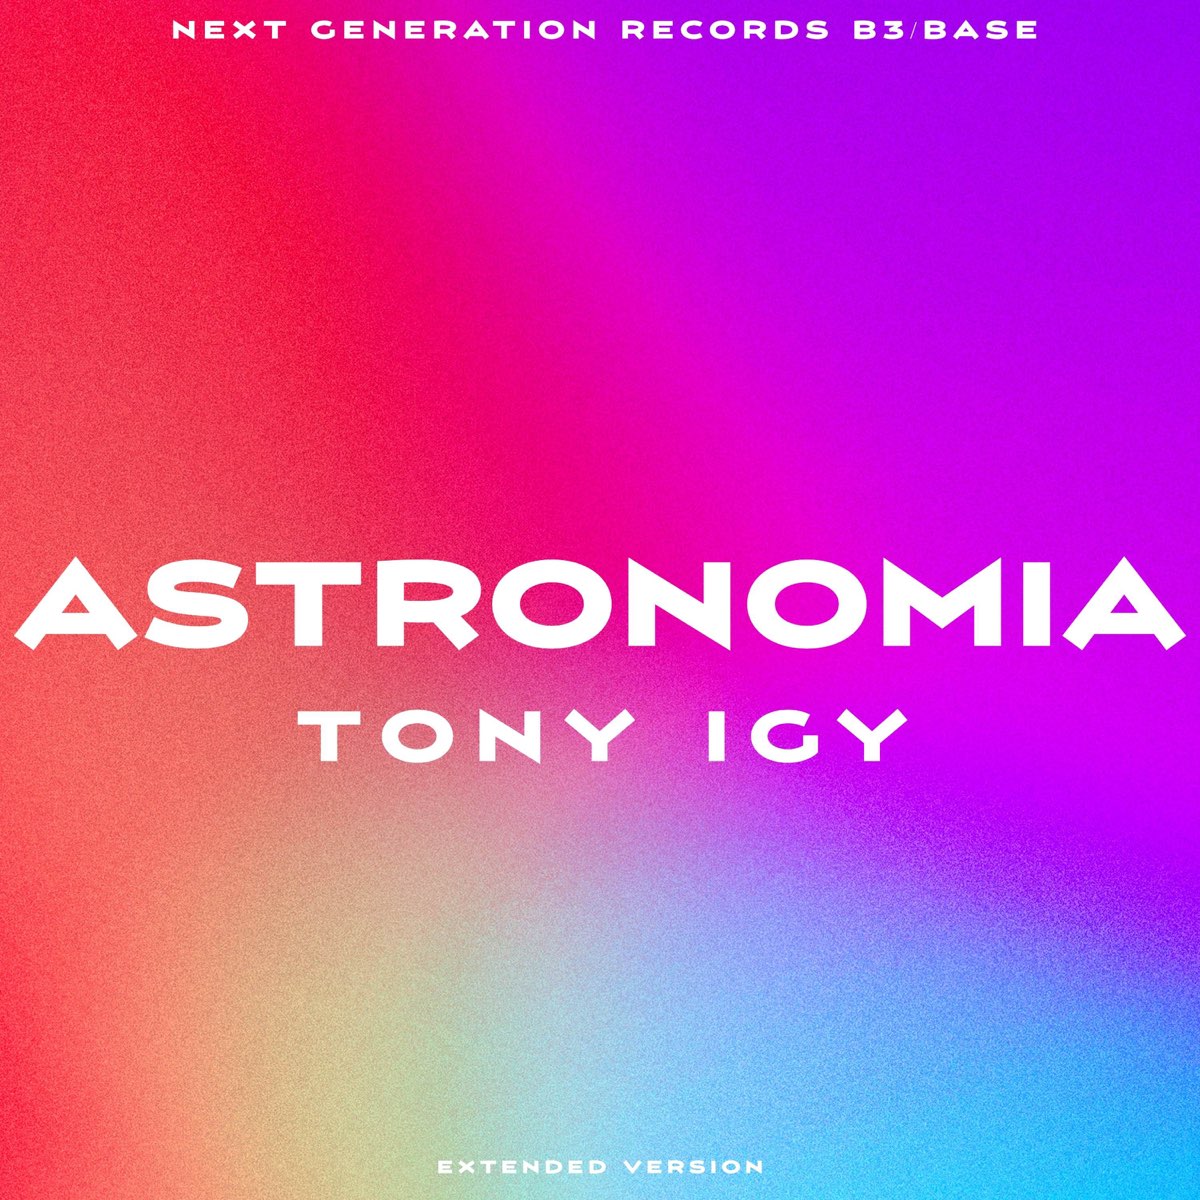 Tony igy Astronomia. DJ Tony igy. Vicetone Tony igy Astronomia 2014. Tony igy overcast. Hot tony igy